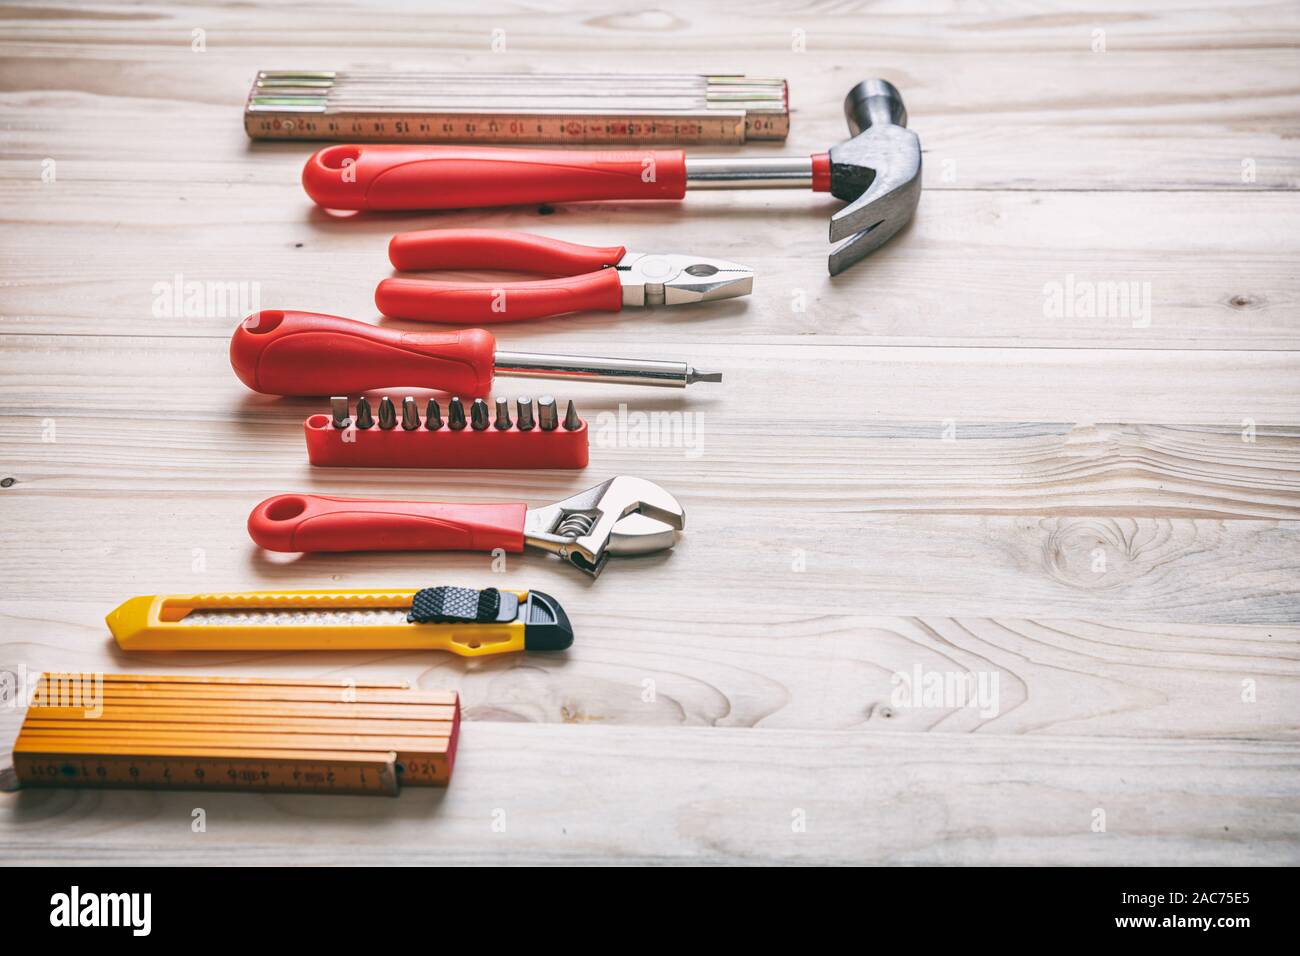 Bricolage, réparation, service concept. Ensemble d'outils à main de couleur rouge et jaune sur bois, copie espace, vue en gros plan. Banque D'Images